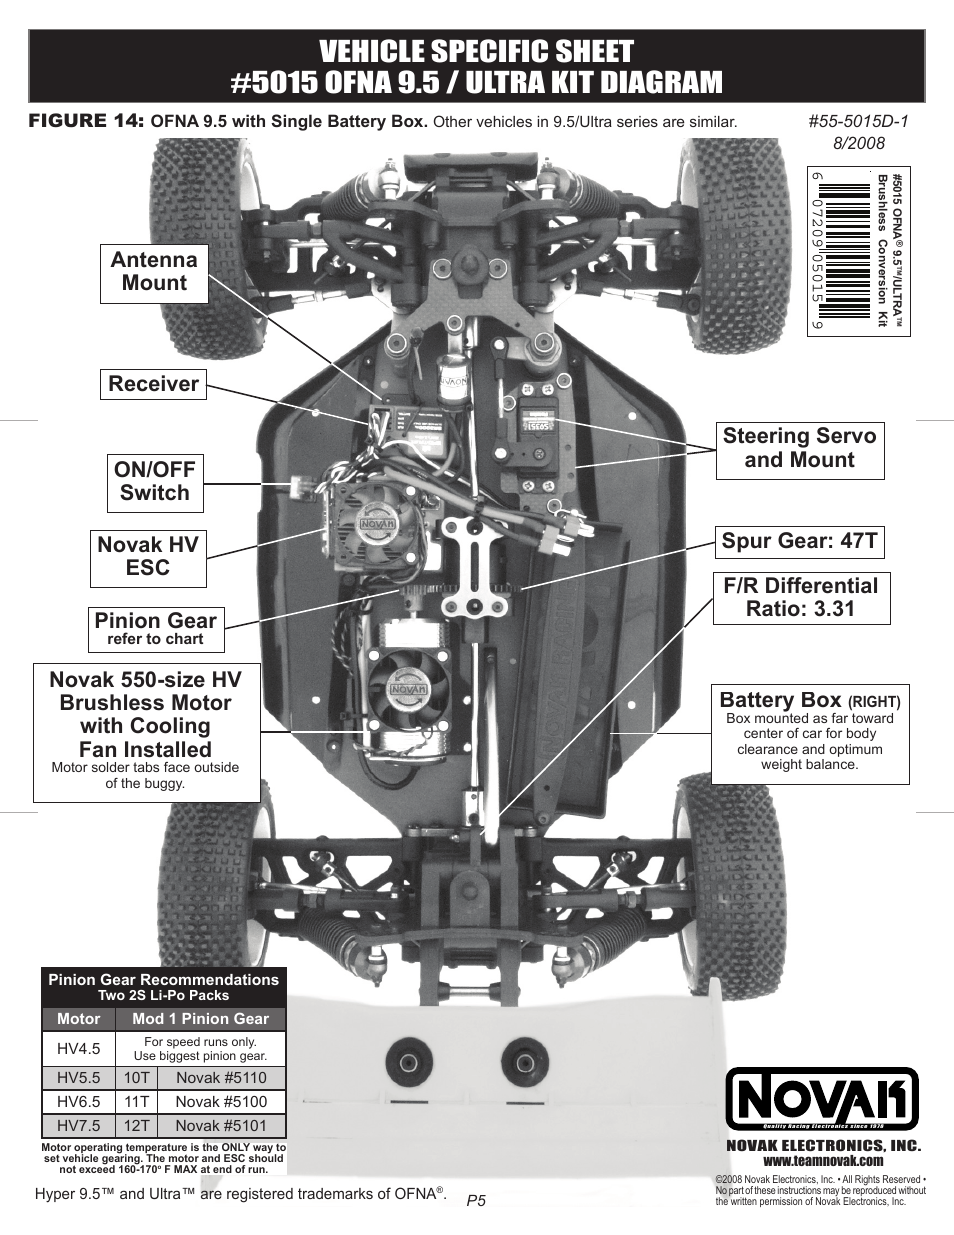 Novak Conv. Kit Vehicle Sheet-OFNA Hyper 8 (55-5015D-1) User Manual | 2 pages